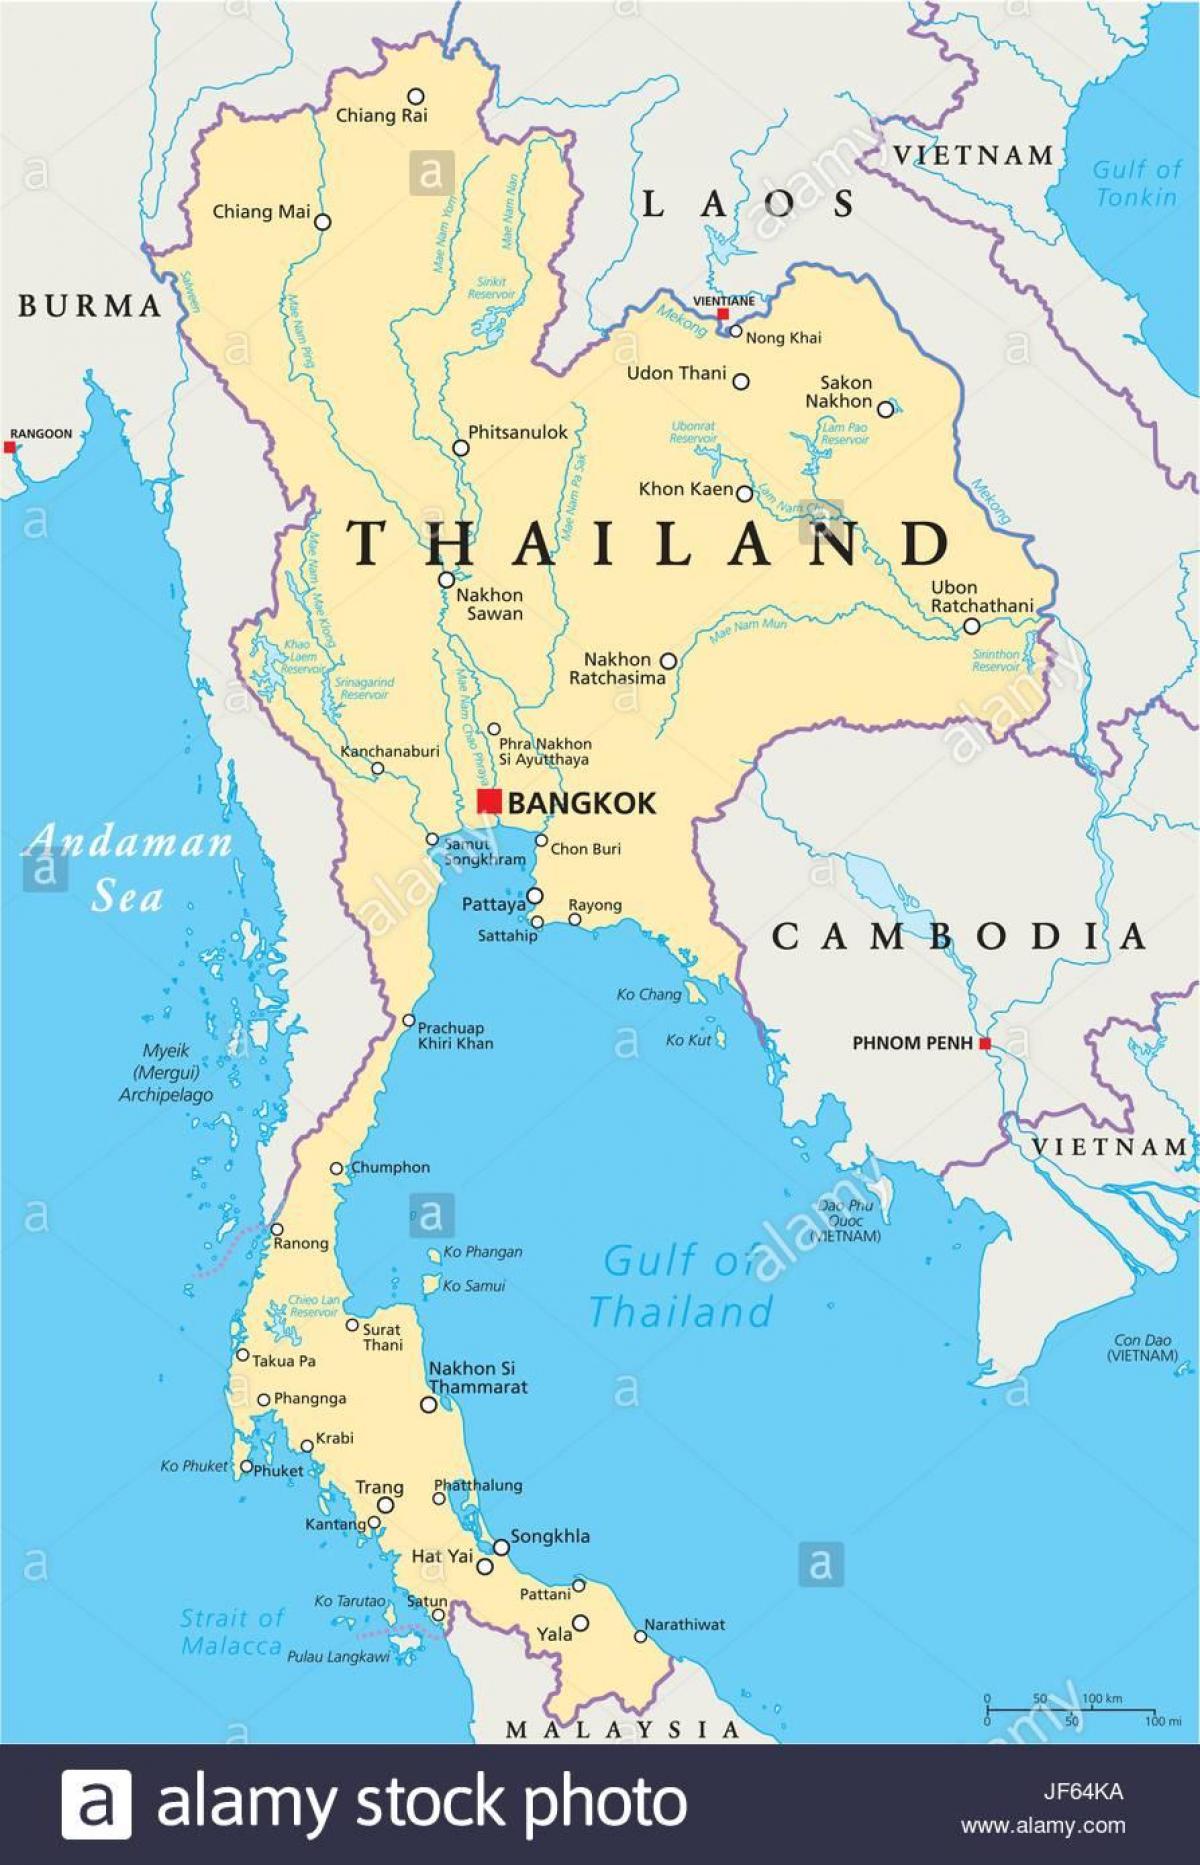 bangkok, thailand kat jeyografik mond lan